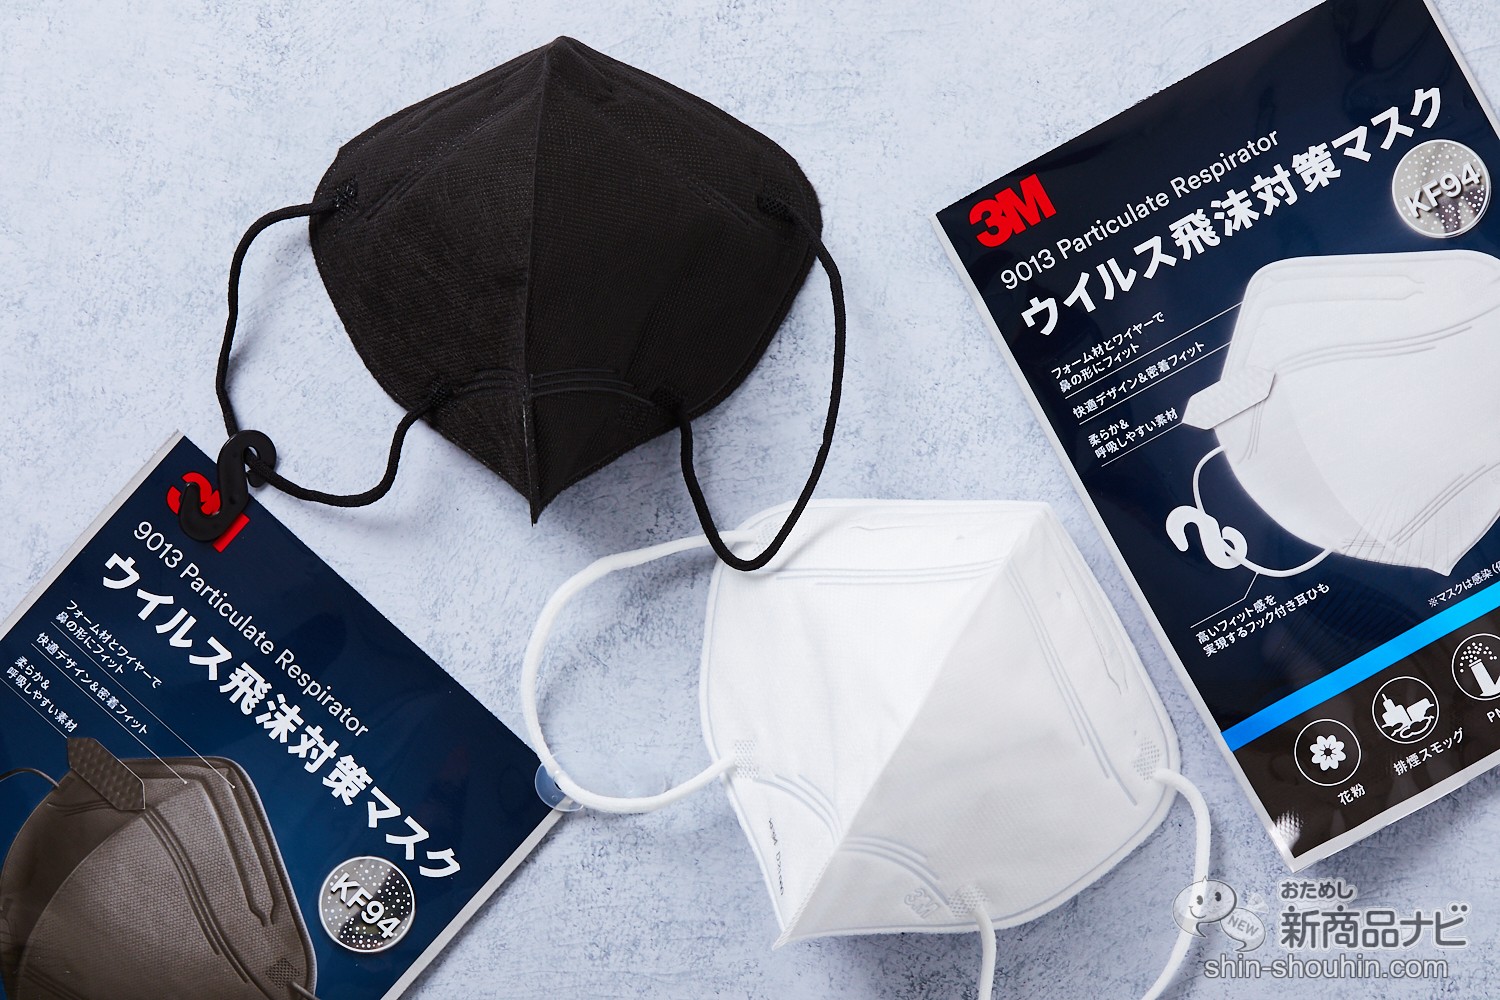 おためし新商品ナビ » Blog Archive » 【KF94 規格】高機能マスク『3M ウイルス飛沫対策マスク』はフック式で耳痛知らず！